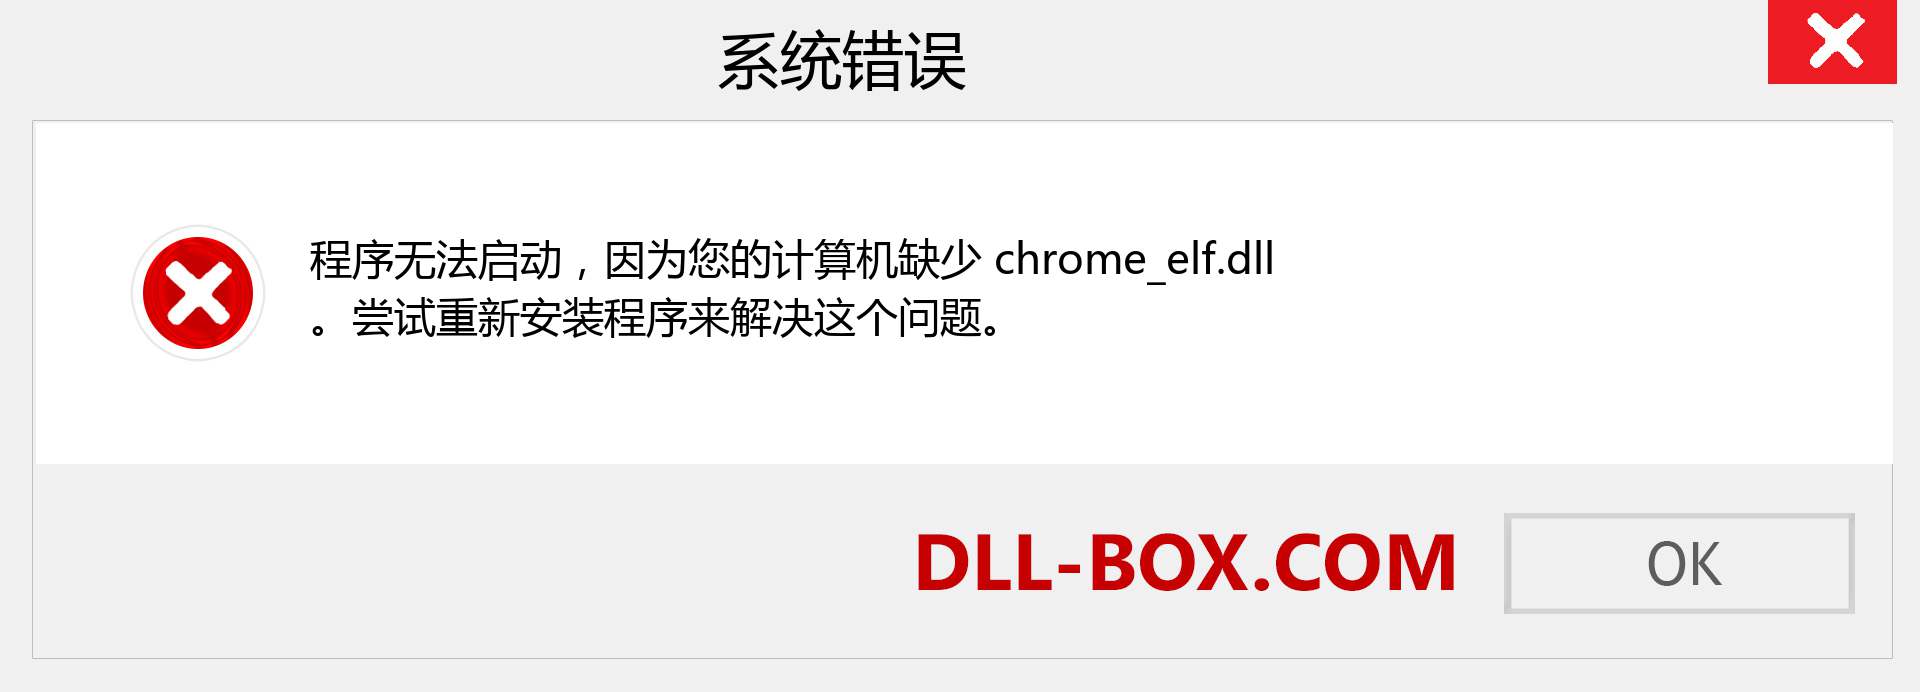 chrome_elf.dll 文件丢失？。 适用于 Windows 7、8、10 的下载 - 修复 Windows、照片、图像上的 chrome_elf dll 丢失错误